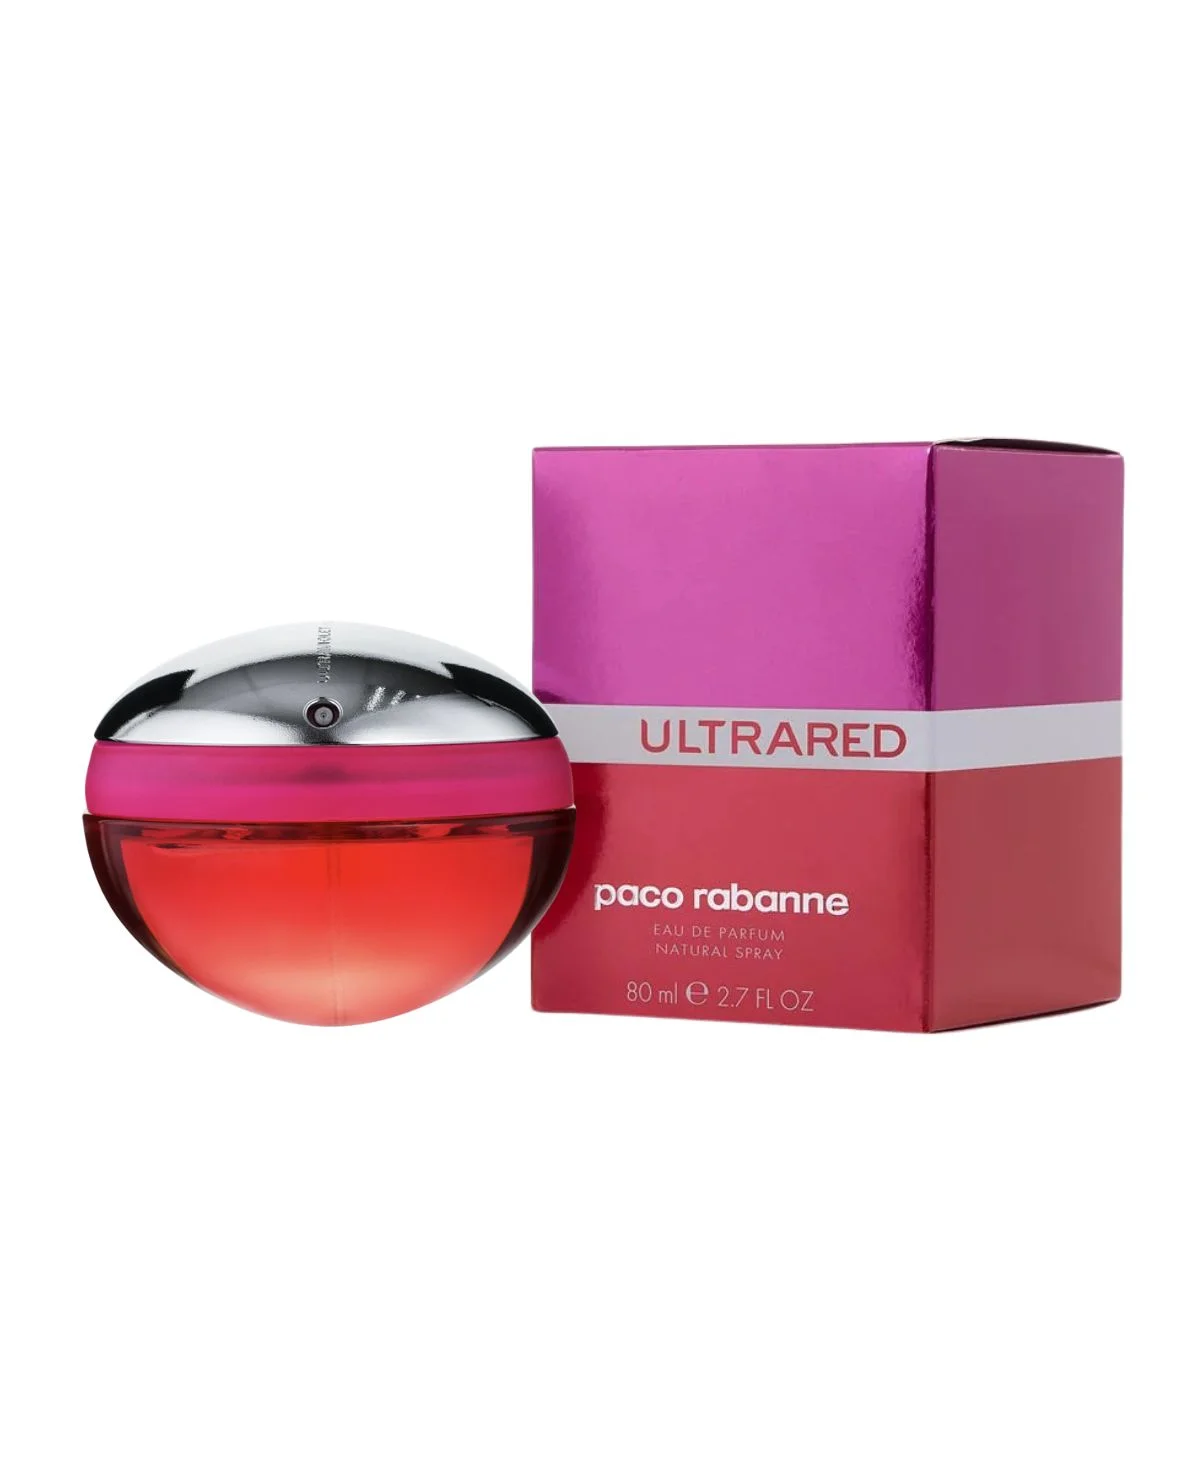 Paco Rabanne Ultrared for Women Eau de Parfum (EDP) Spray 2.8 oz (80 ml) 3349666006016